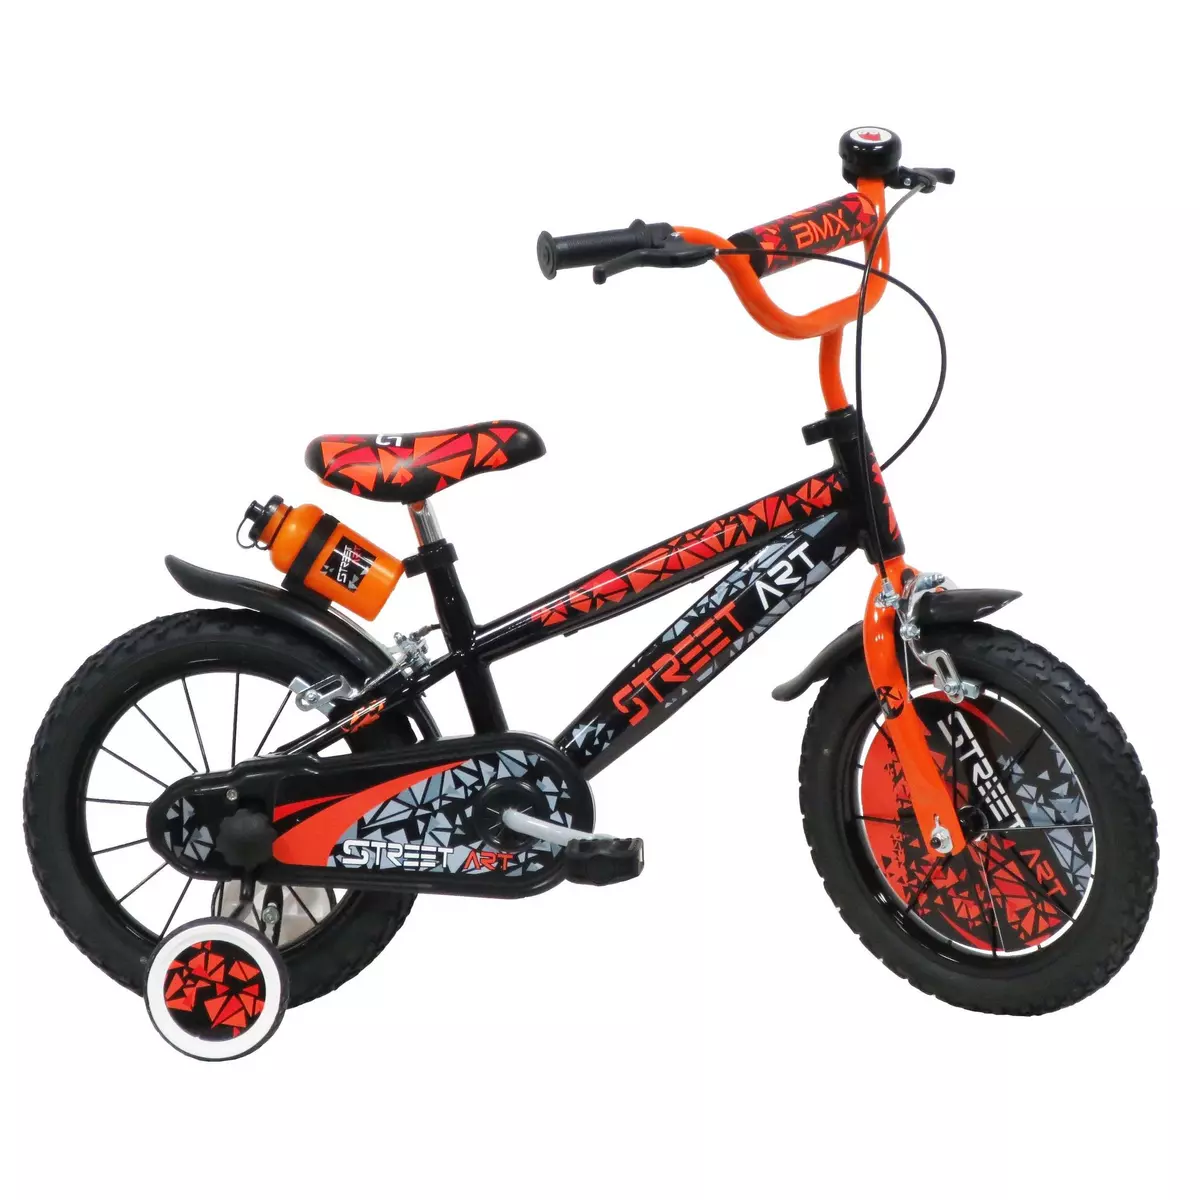  Vélo 14  Garçon  Street Art  pour enfant de 4 à 6 ans avec stabilisateurs à molettes - 2 freins